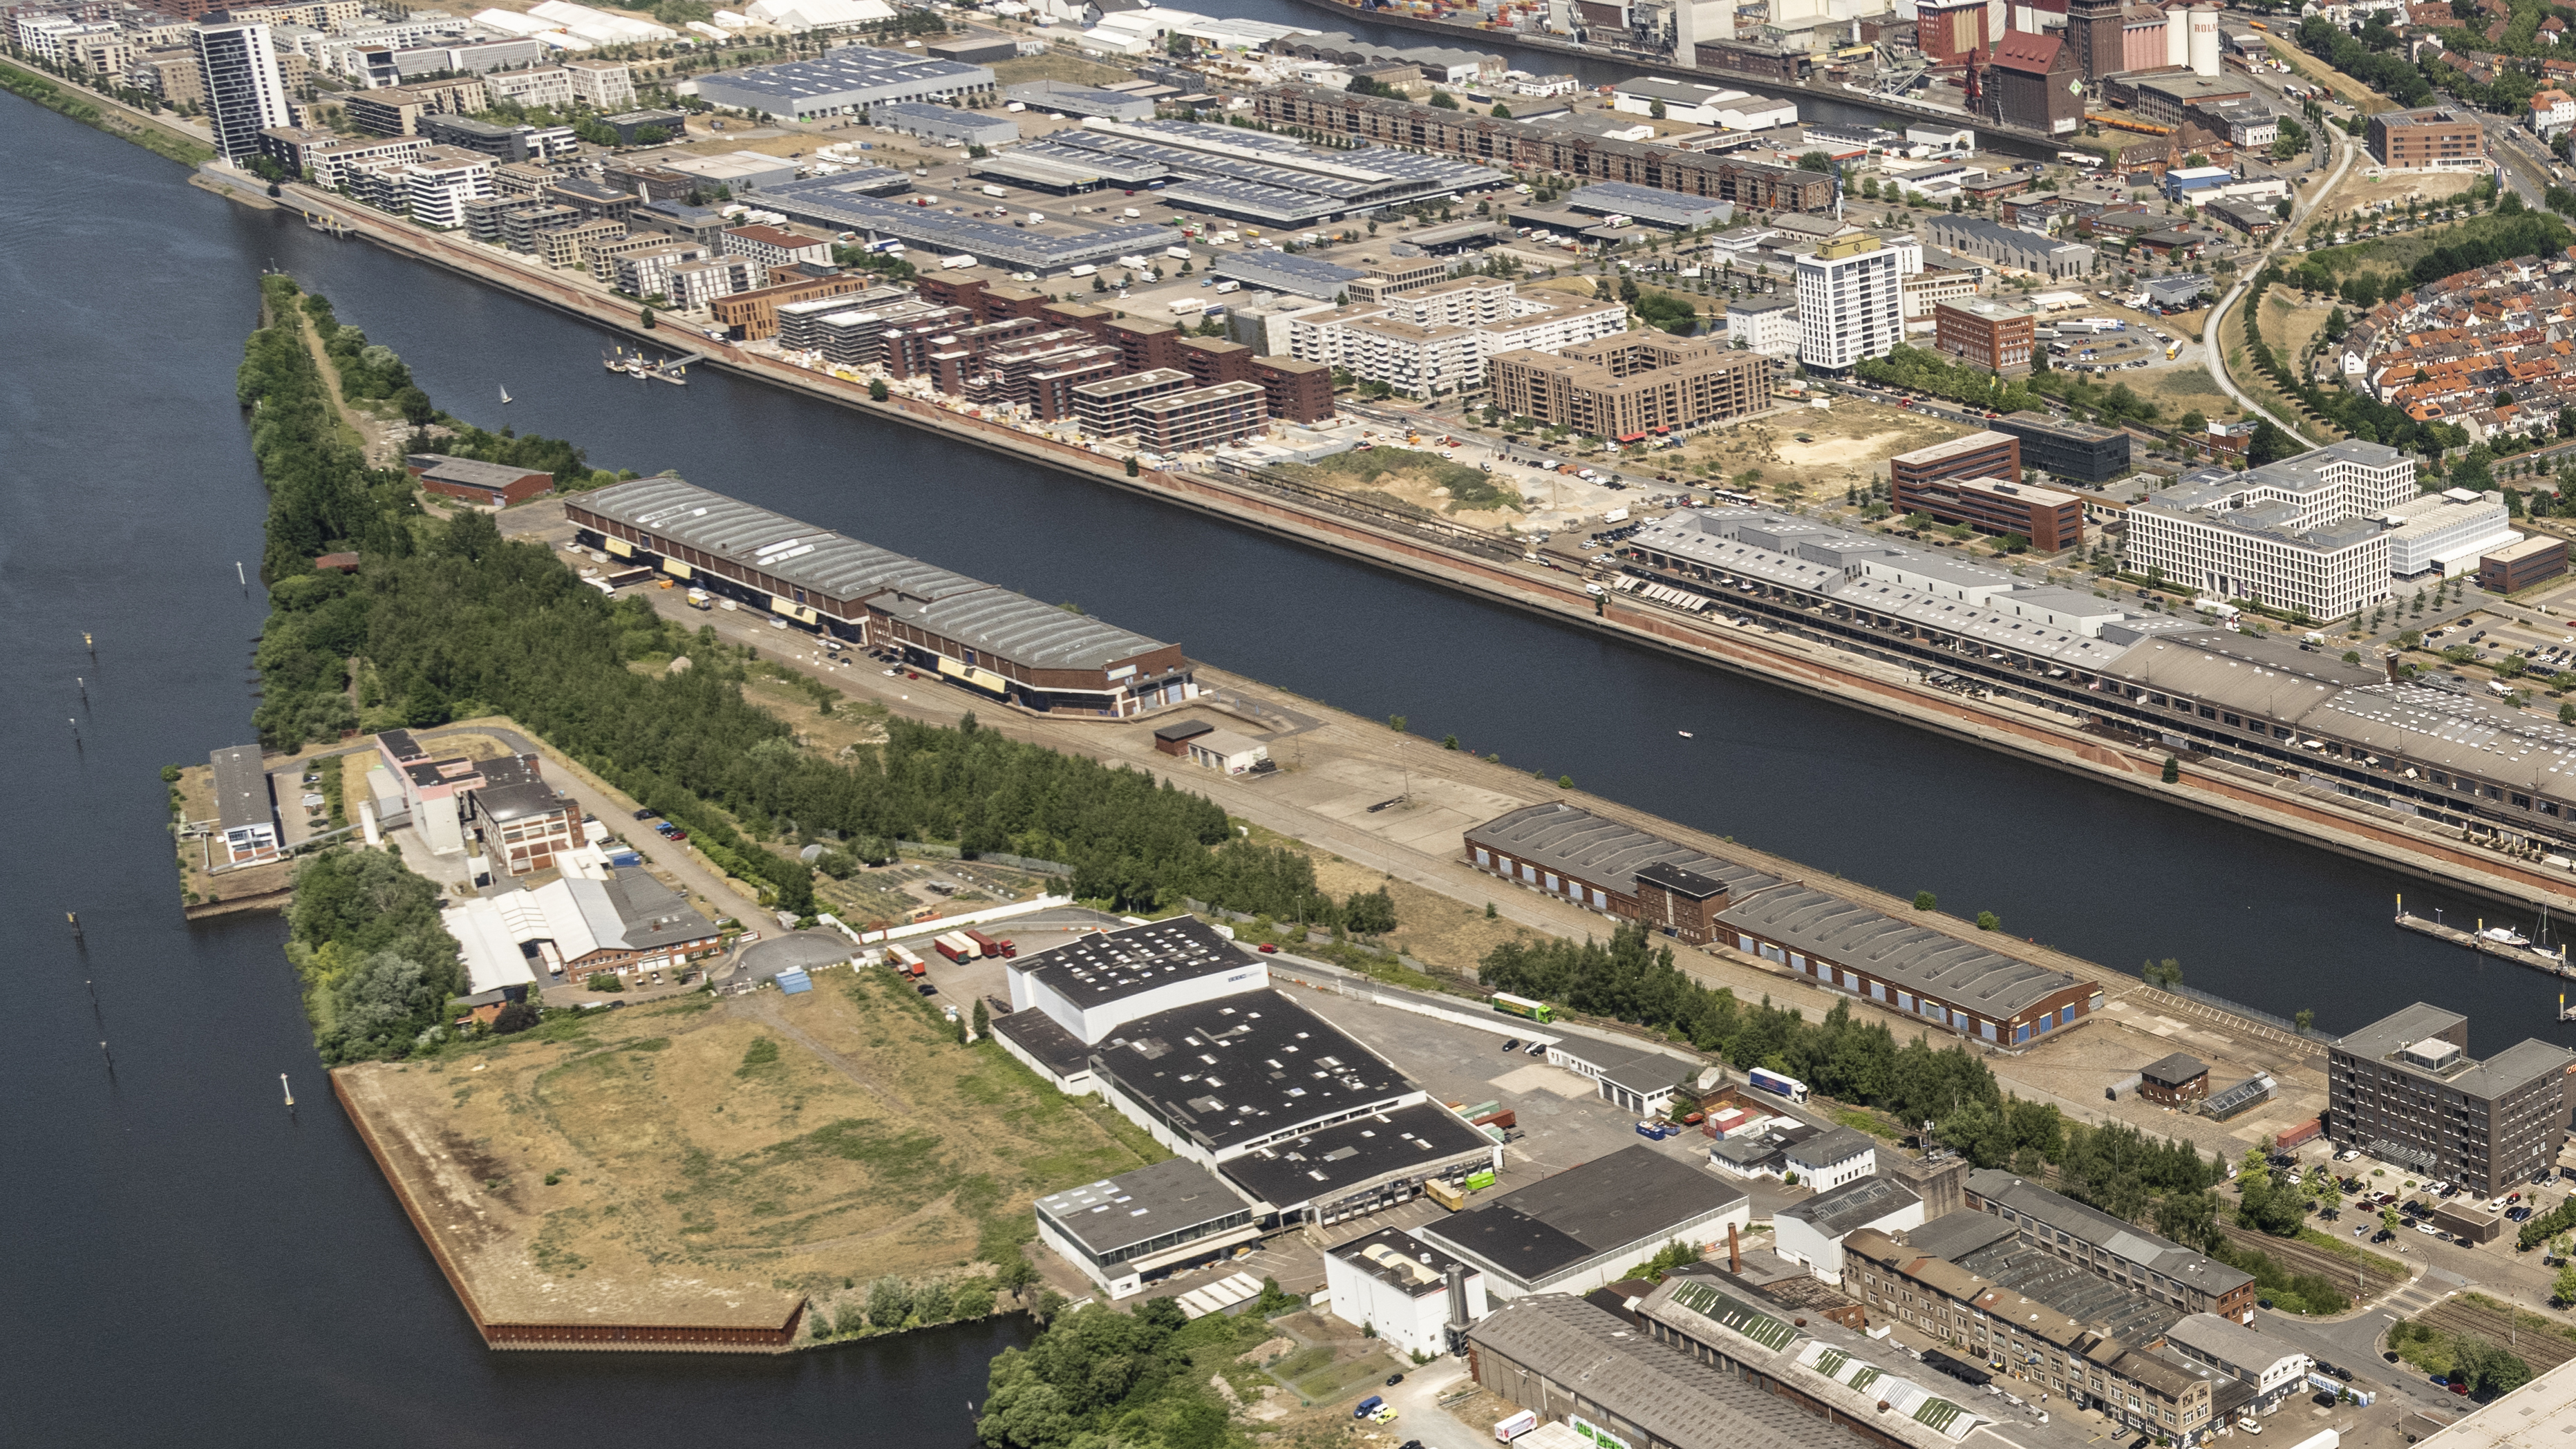 Luftbild einer Landzunge zwischen Europahafen und Weser in der Bremer Überseestadt mit zwei großen Schuppen und weiteren Gebäuden. - Quelle: WFB / Studio B